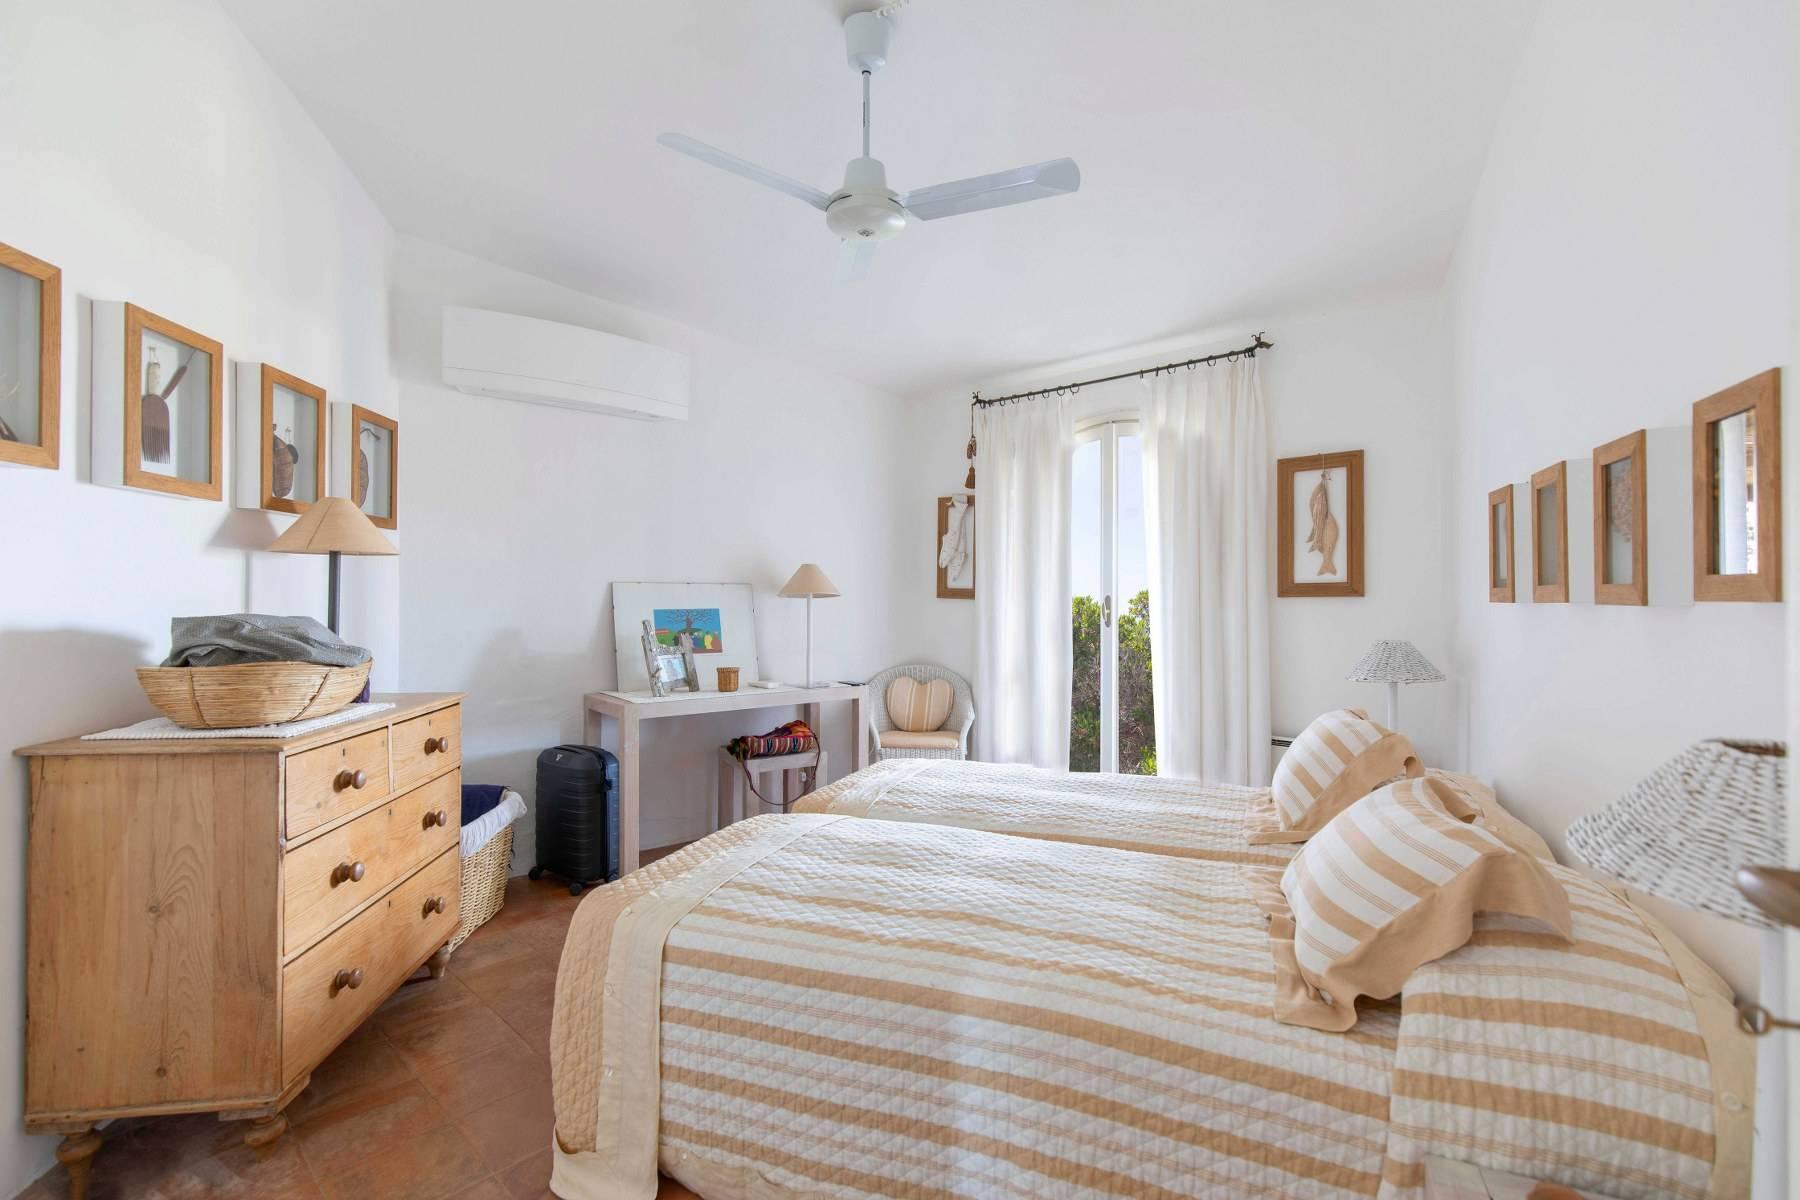 Grazioso e accogliente appartamento villa con vista sul mare e sul centro di Porto Cervo - 7